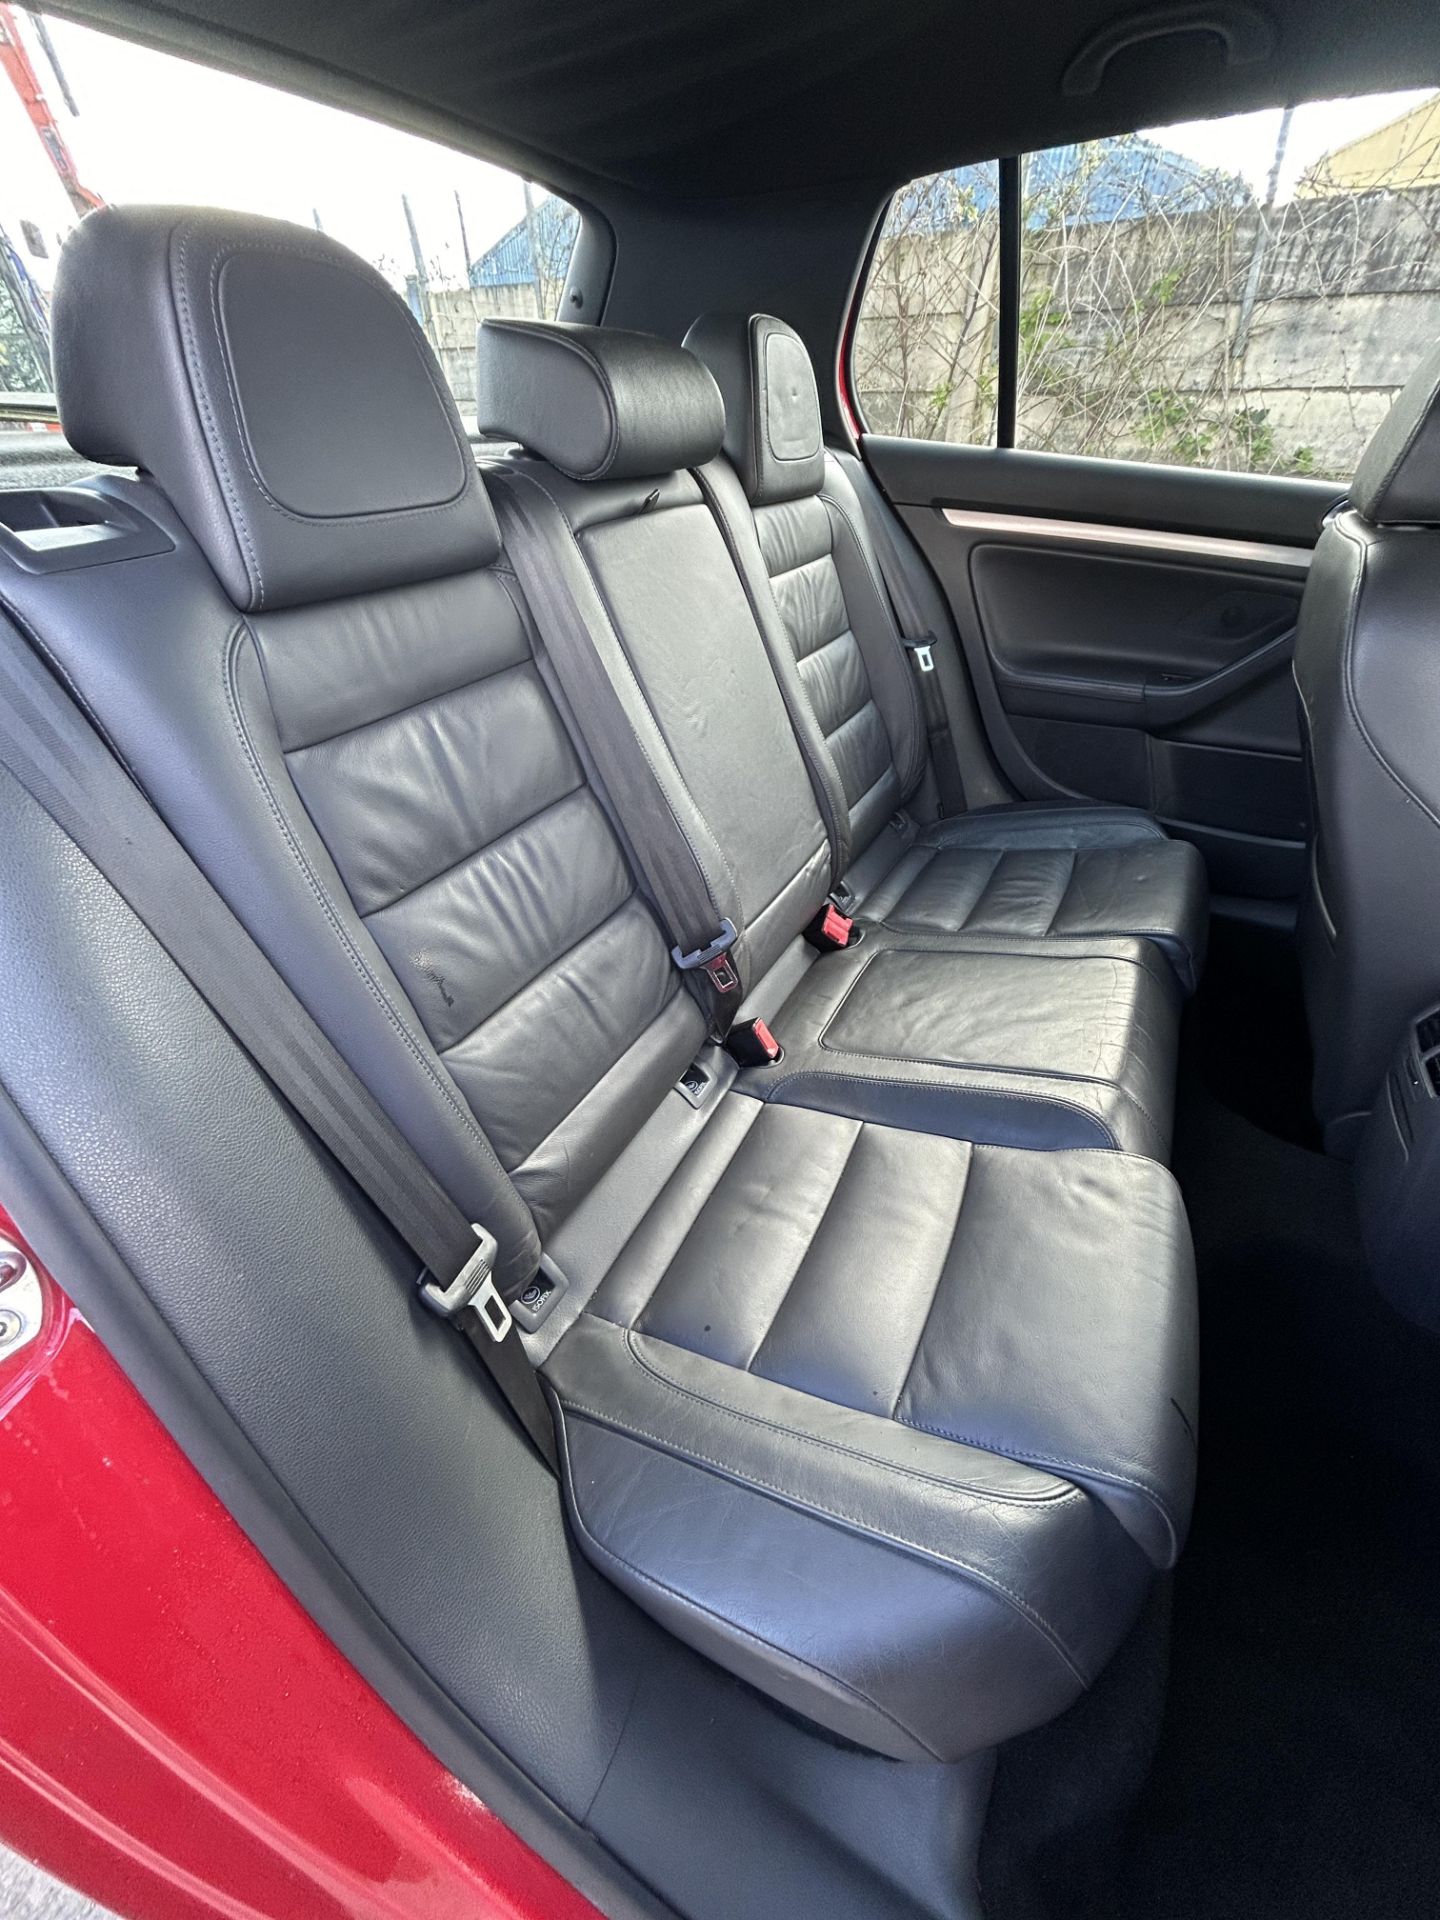 Volkswagen Golf GTI Petrol 5 Door Hatchback | LS08 DBU | 140,243 Miles - Image 7 of 13